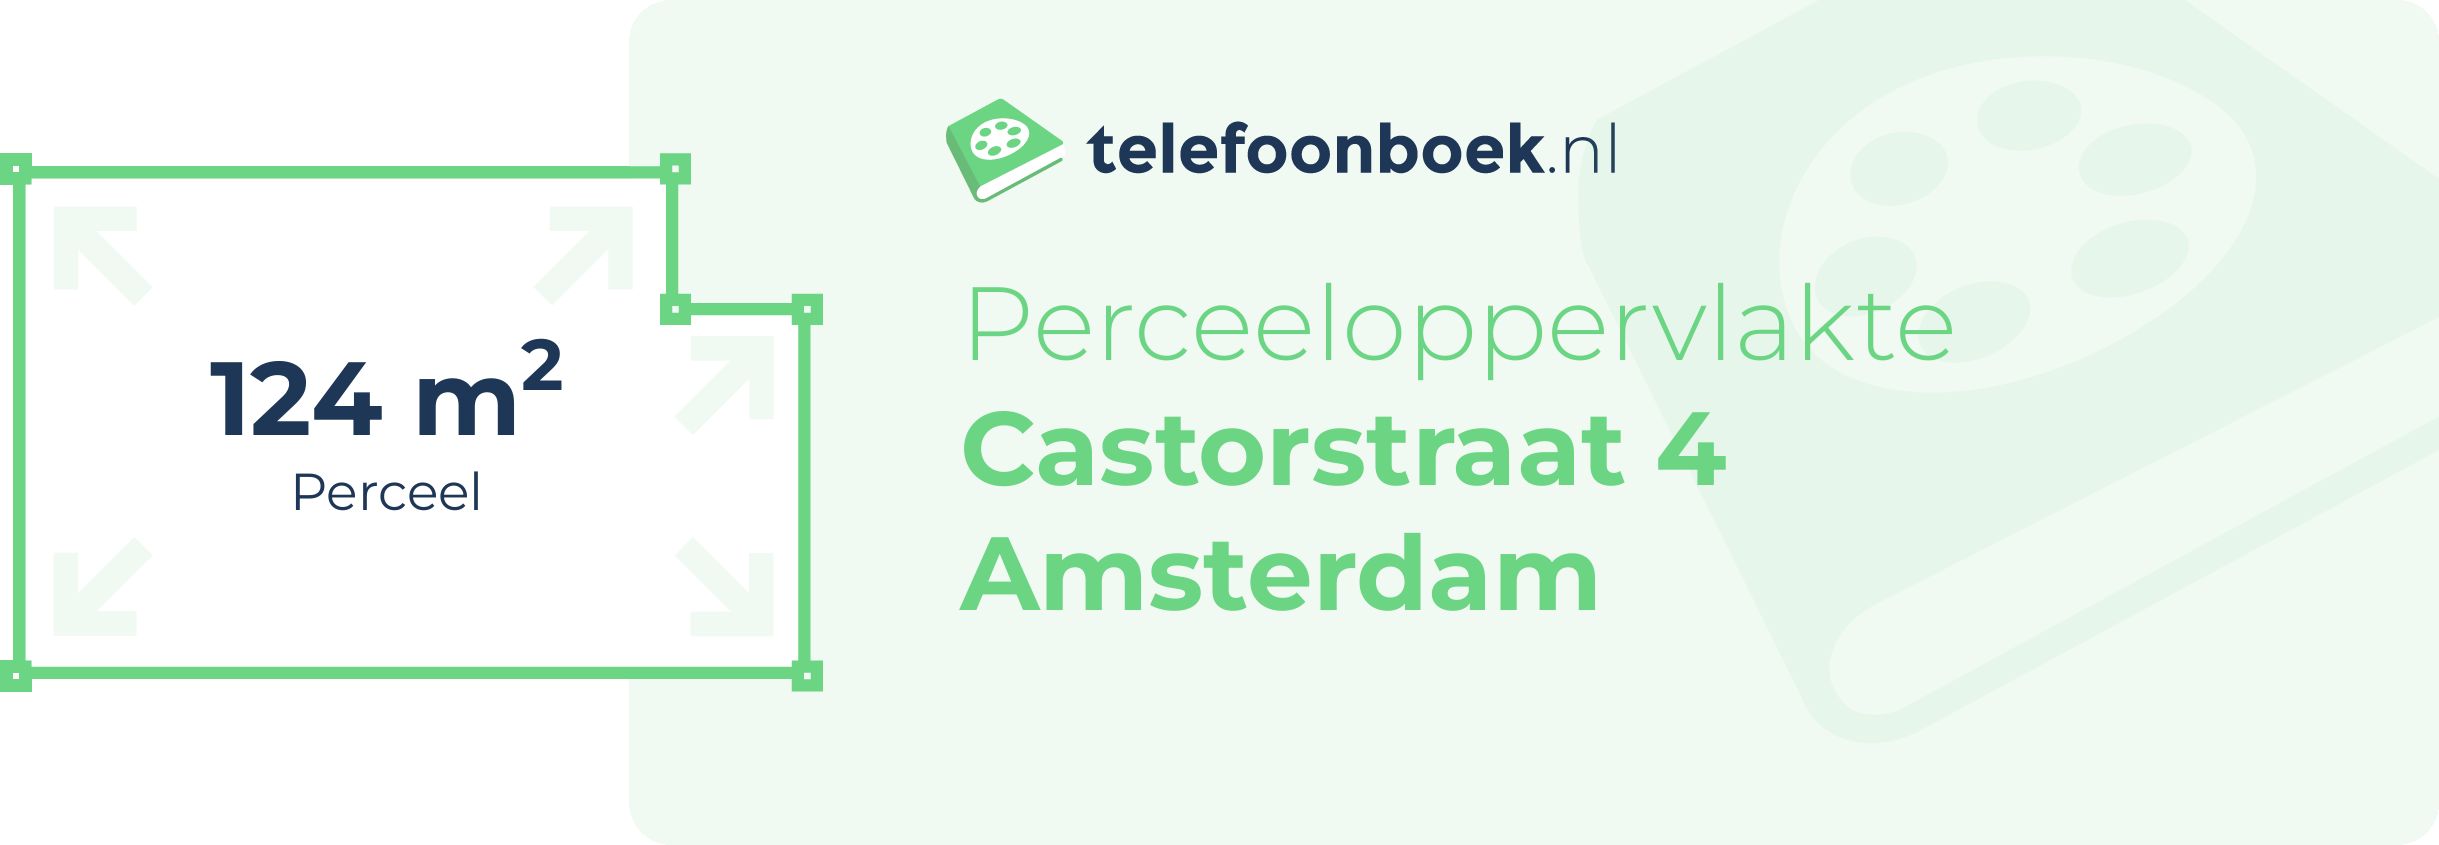 Perceeloppervlakte Castorstraat 4 Amsterdam